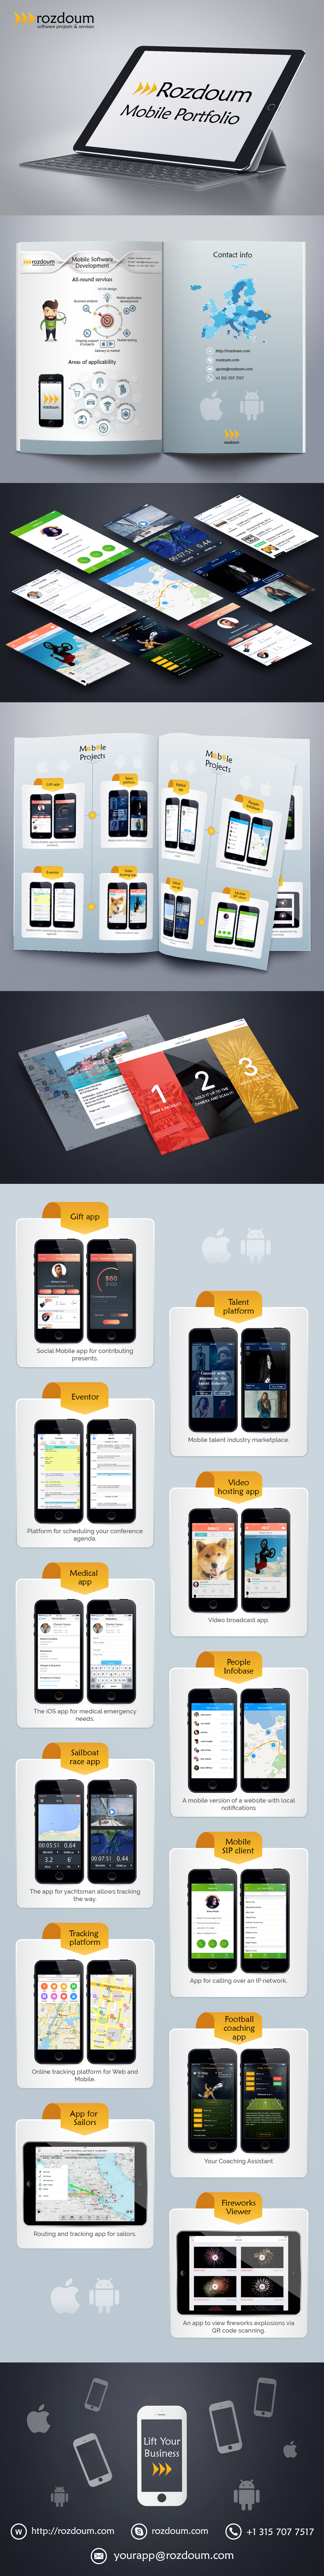 Rozdoum UI/UX Design Mobile app ios android software development portfolio UI ux